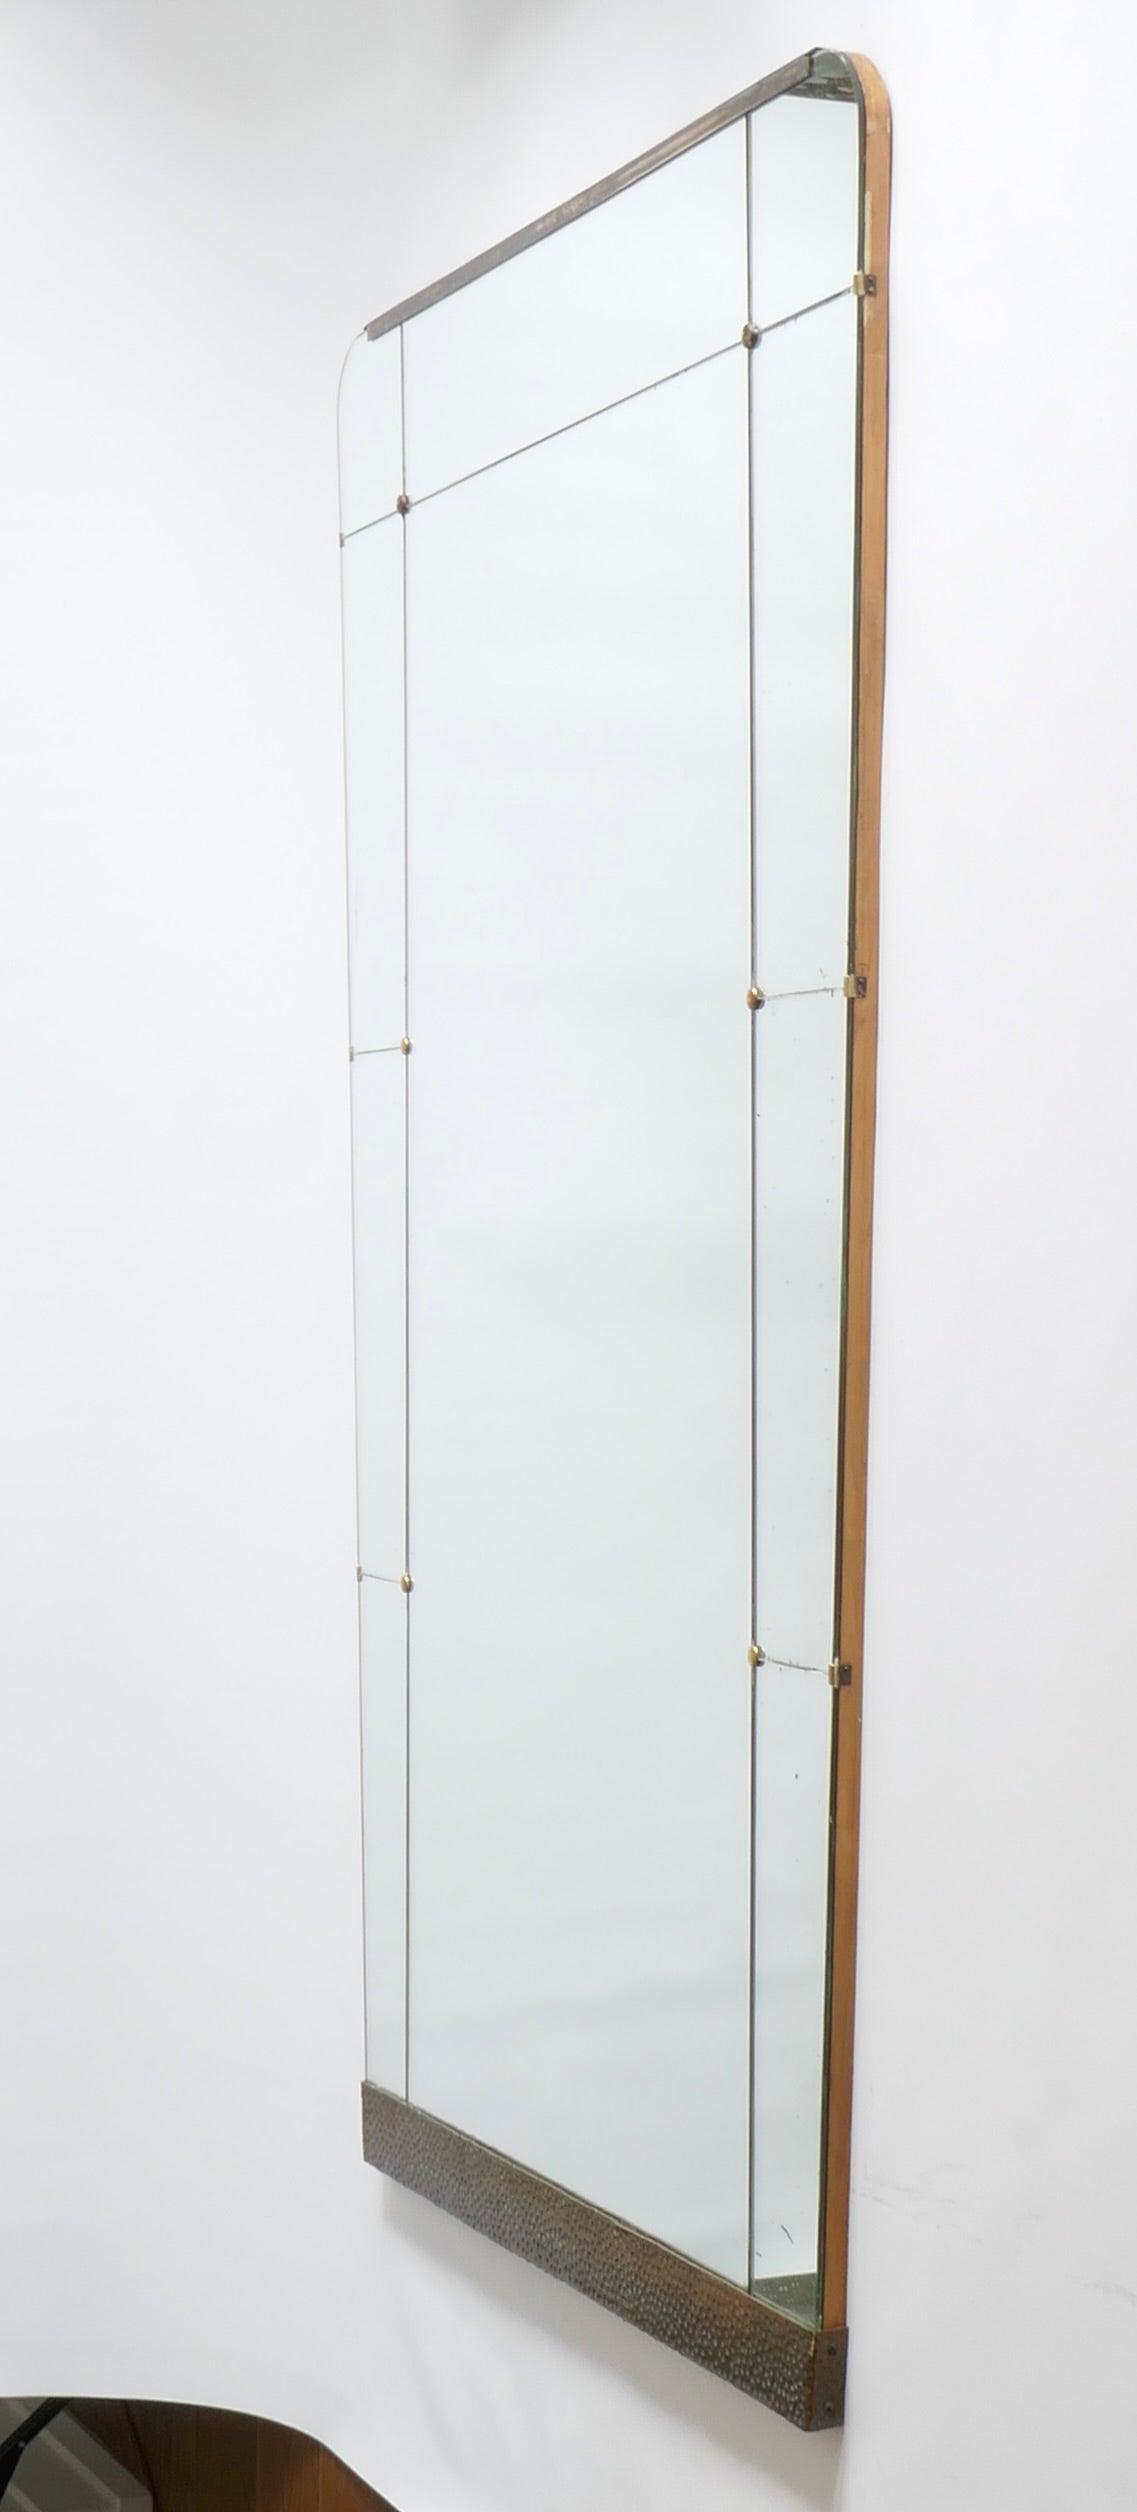 Ein sehr großer Wandspiegel von spitz zulaufender rechteckiger Form, bestehend aus einem großen zentralen Glas innerhalb einer Kontur von kleineren Glasscheiben, die Scheiben zu jeder oberen Ecke leicht abgerundet. Verziert mit einem gehämmerten